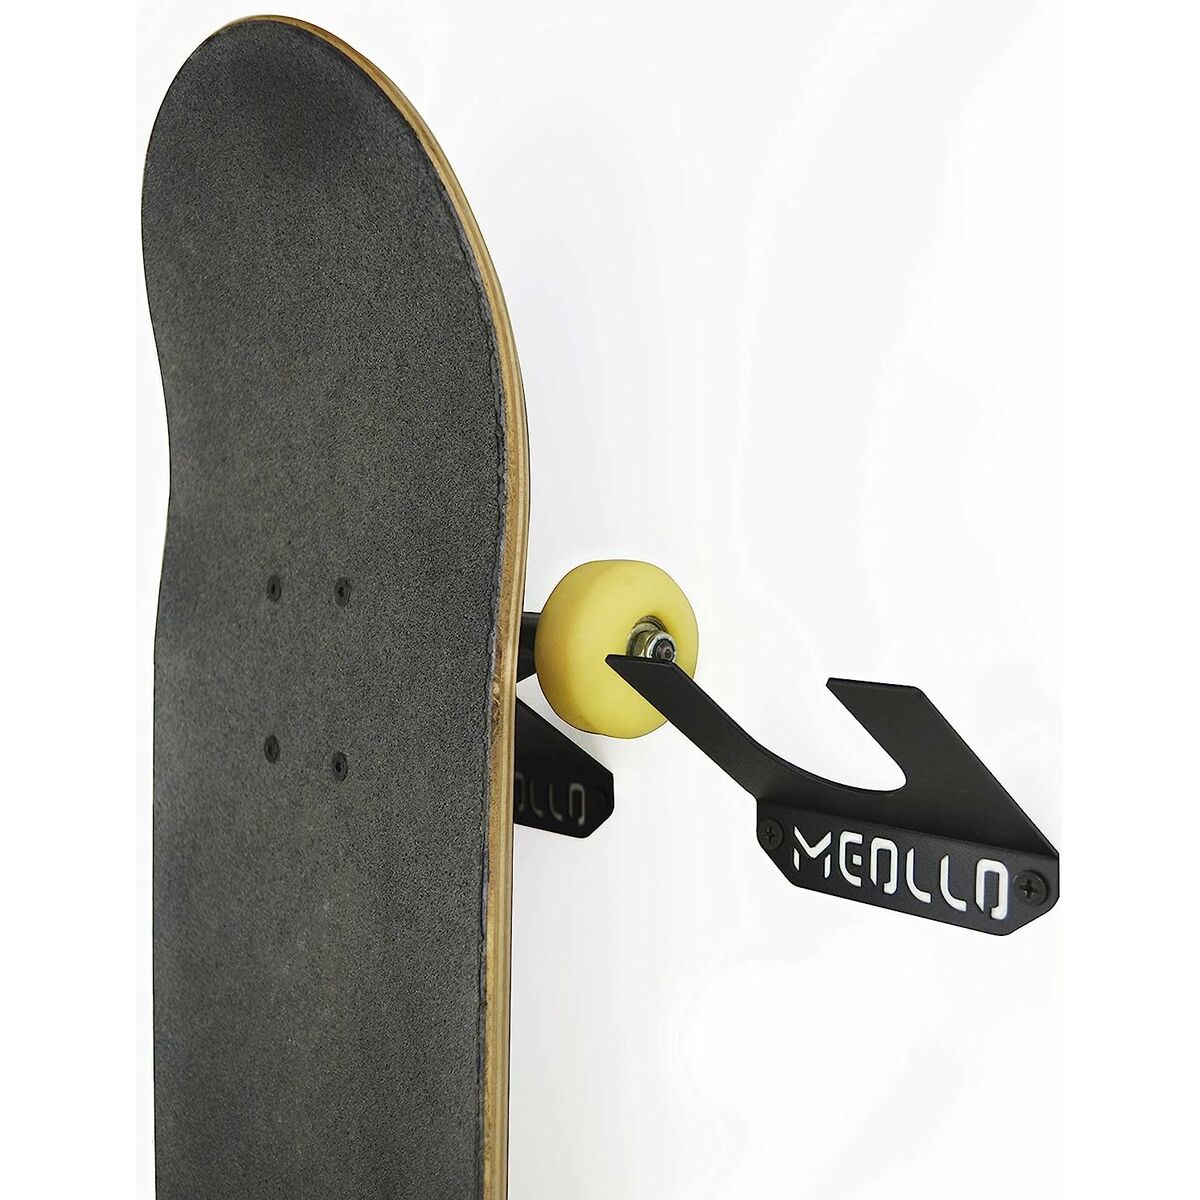 Soporte De Pared Para Skateboard Meollo 10 X 10 X 2 Cm (4 Unidades) - Soporte De Pared Para Skateboard  MKP